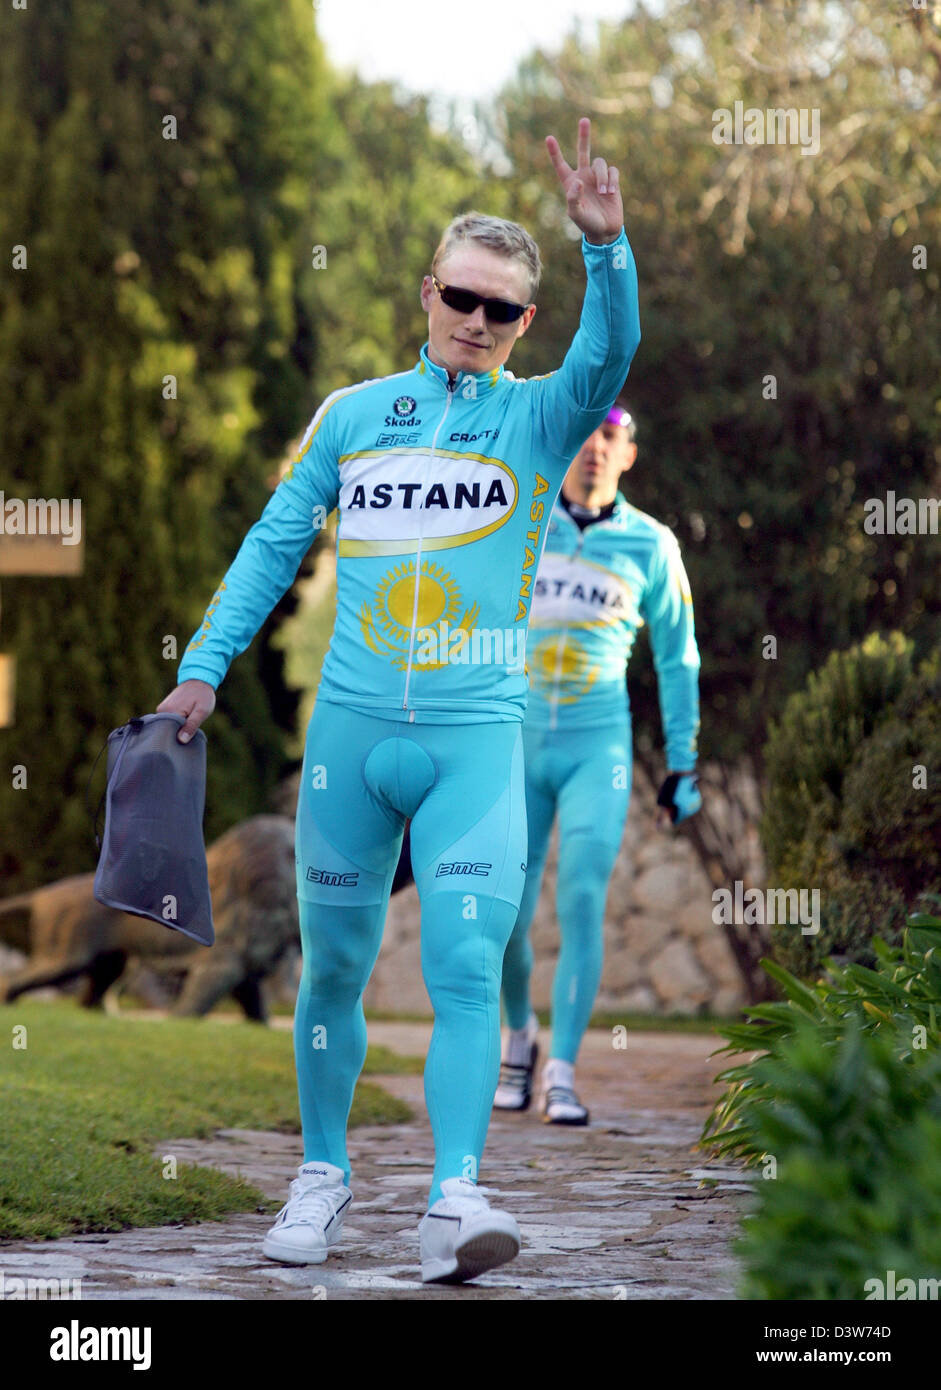 Le kazakh Alexandre Vinokourov vélo pro de l'équipe Astana photographié à la formation en Montuiri, Espagne, vendredi 12 janvier 2007. L'équipe se prépare pour la nouvelle saison à la la belle île des Baléares Mallorca. Photo : Gero Breloer Banque D'Images